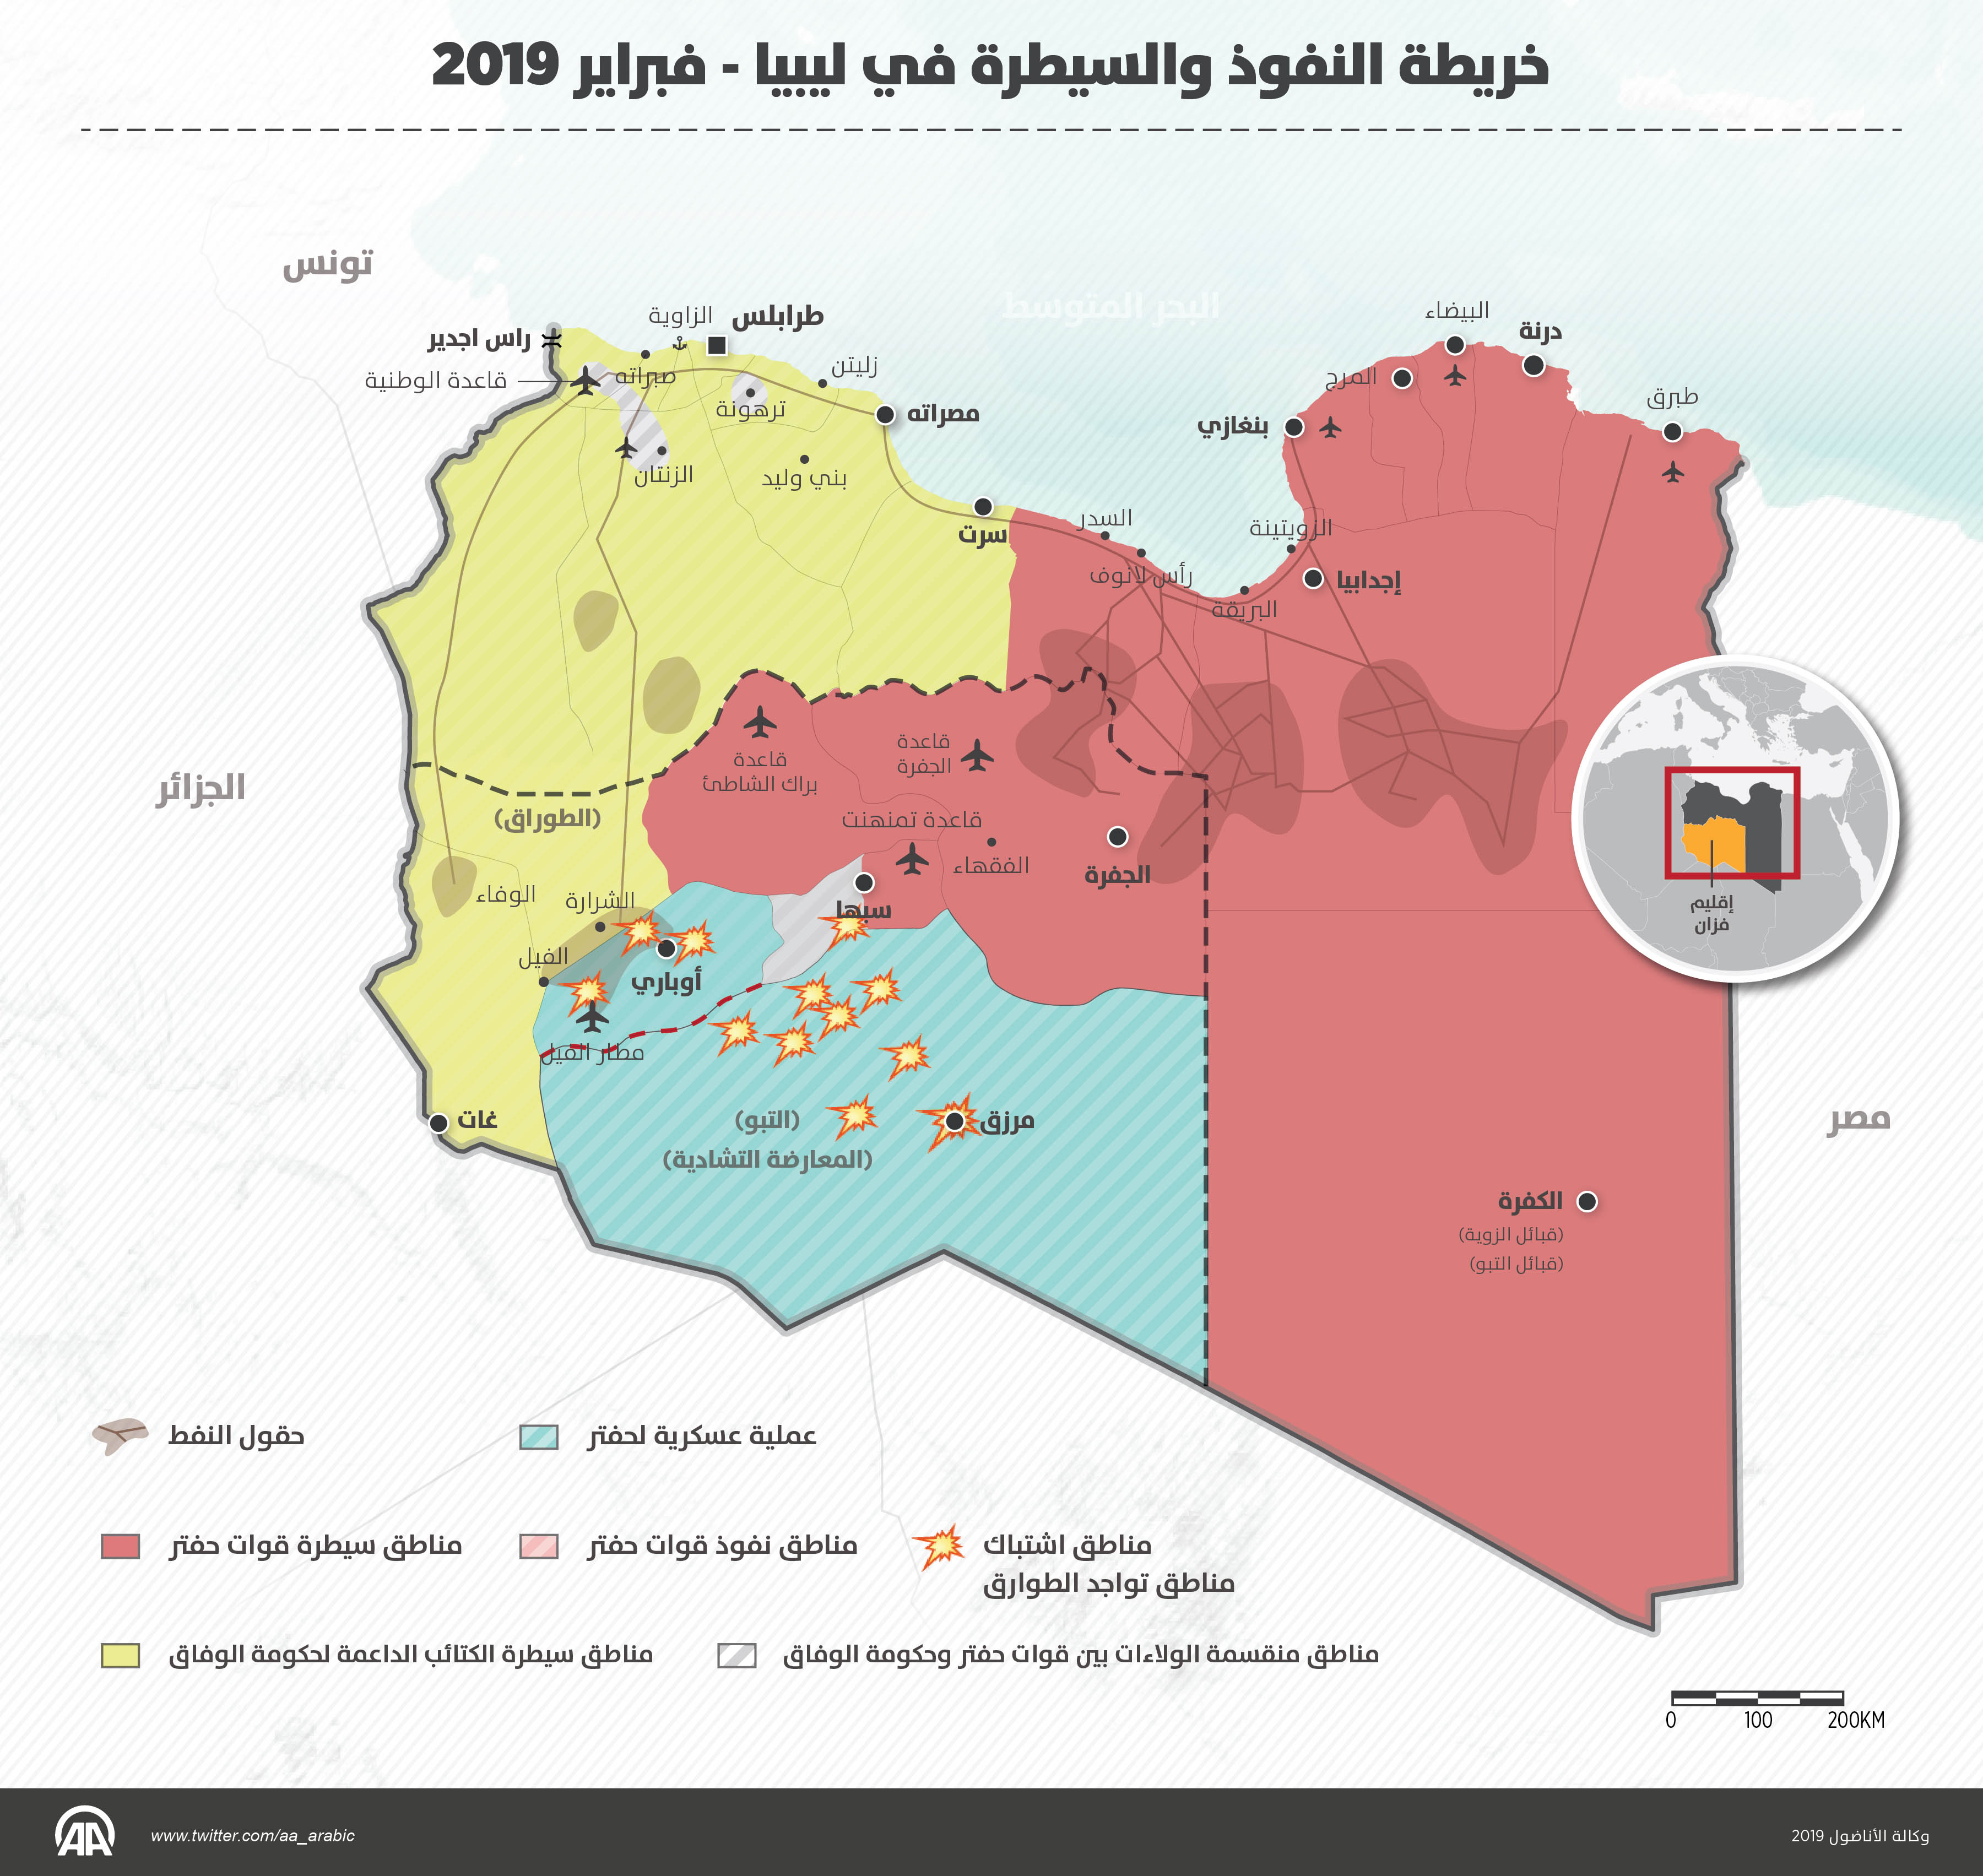 خريطة النفوذ والسيطرة في ليبيا - فبراير 2019